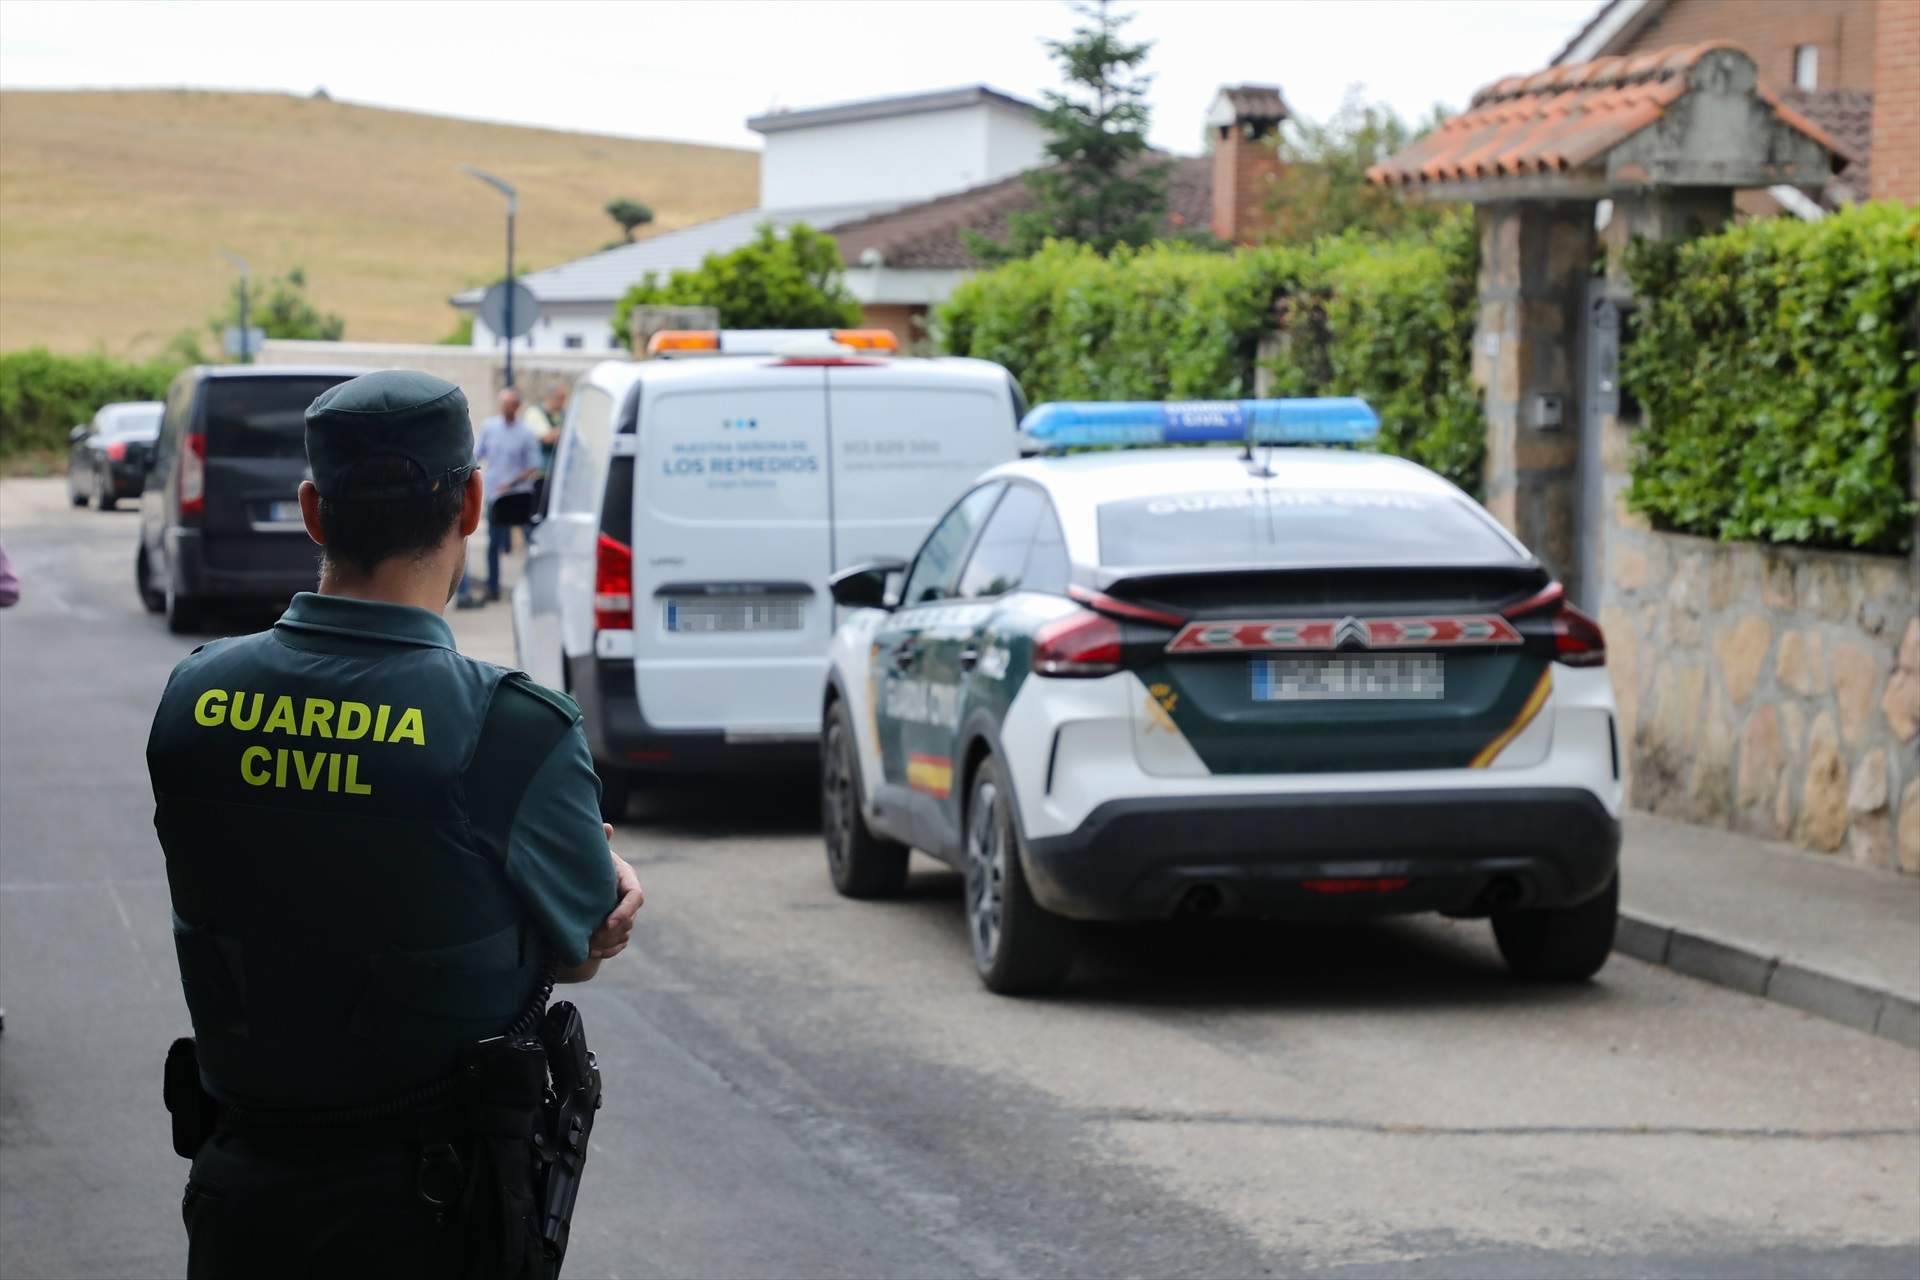 Agentes de la Guardia Civil en el lugar del crimen, en la calle Vicente Aleixandre de Soto del Real / Rafael Bastante, Europa Press